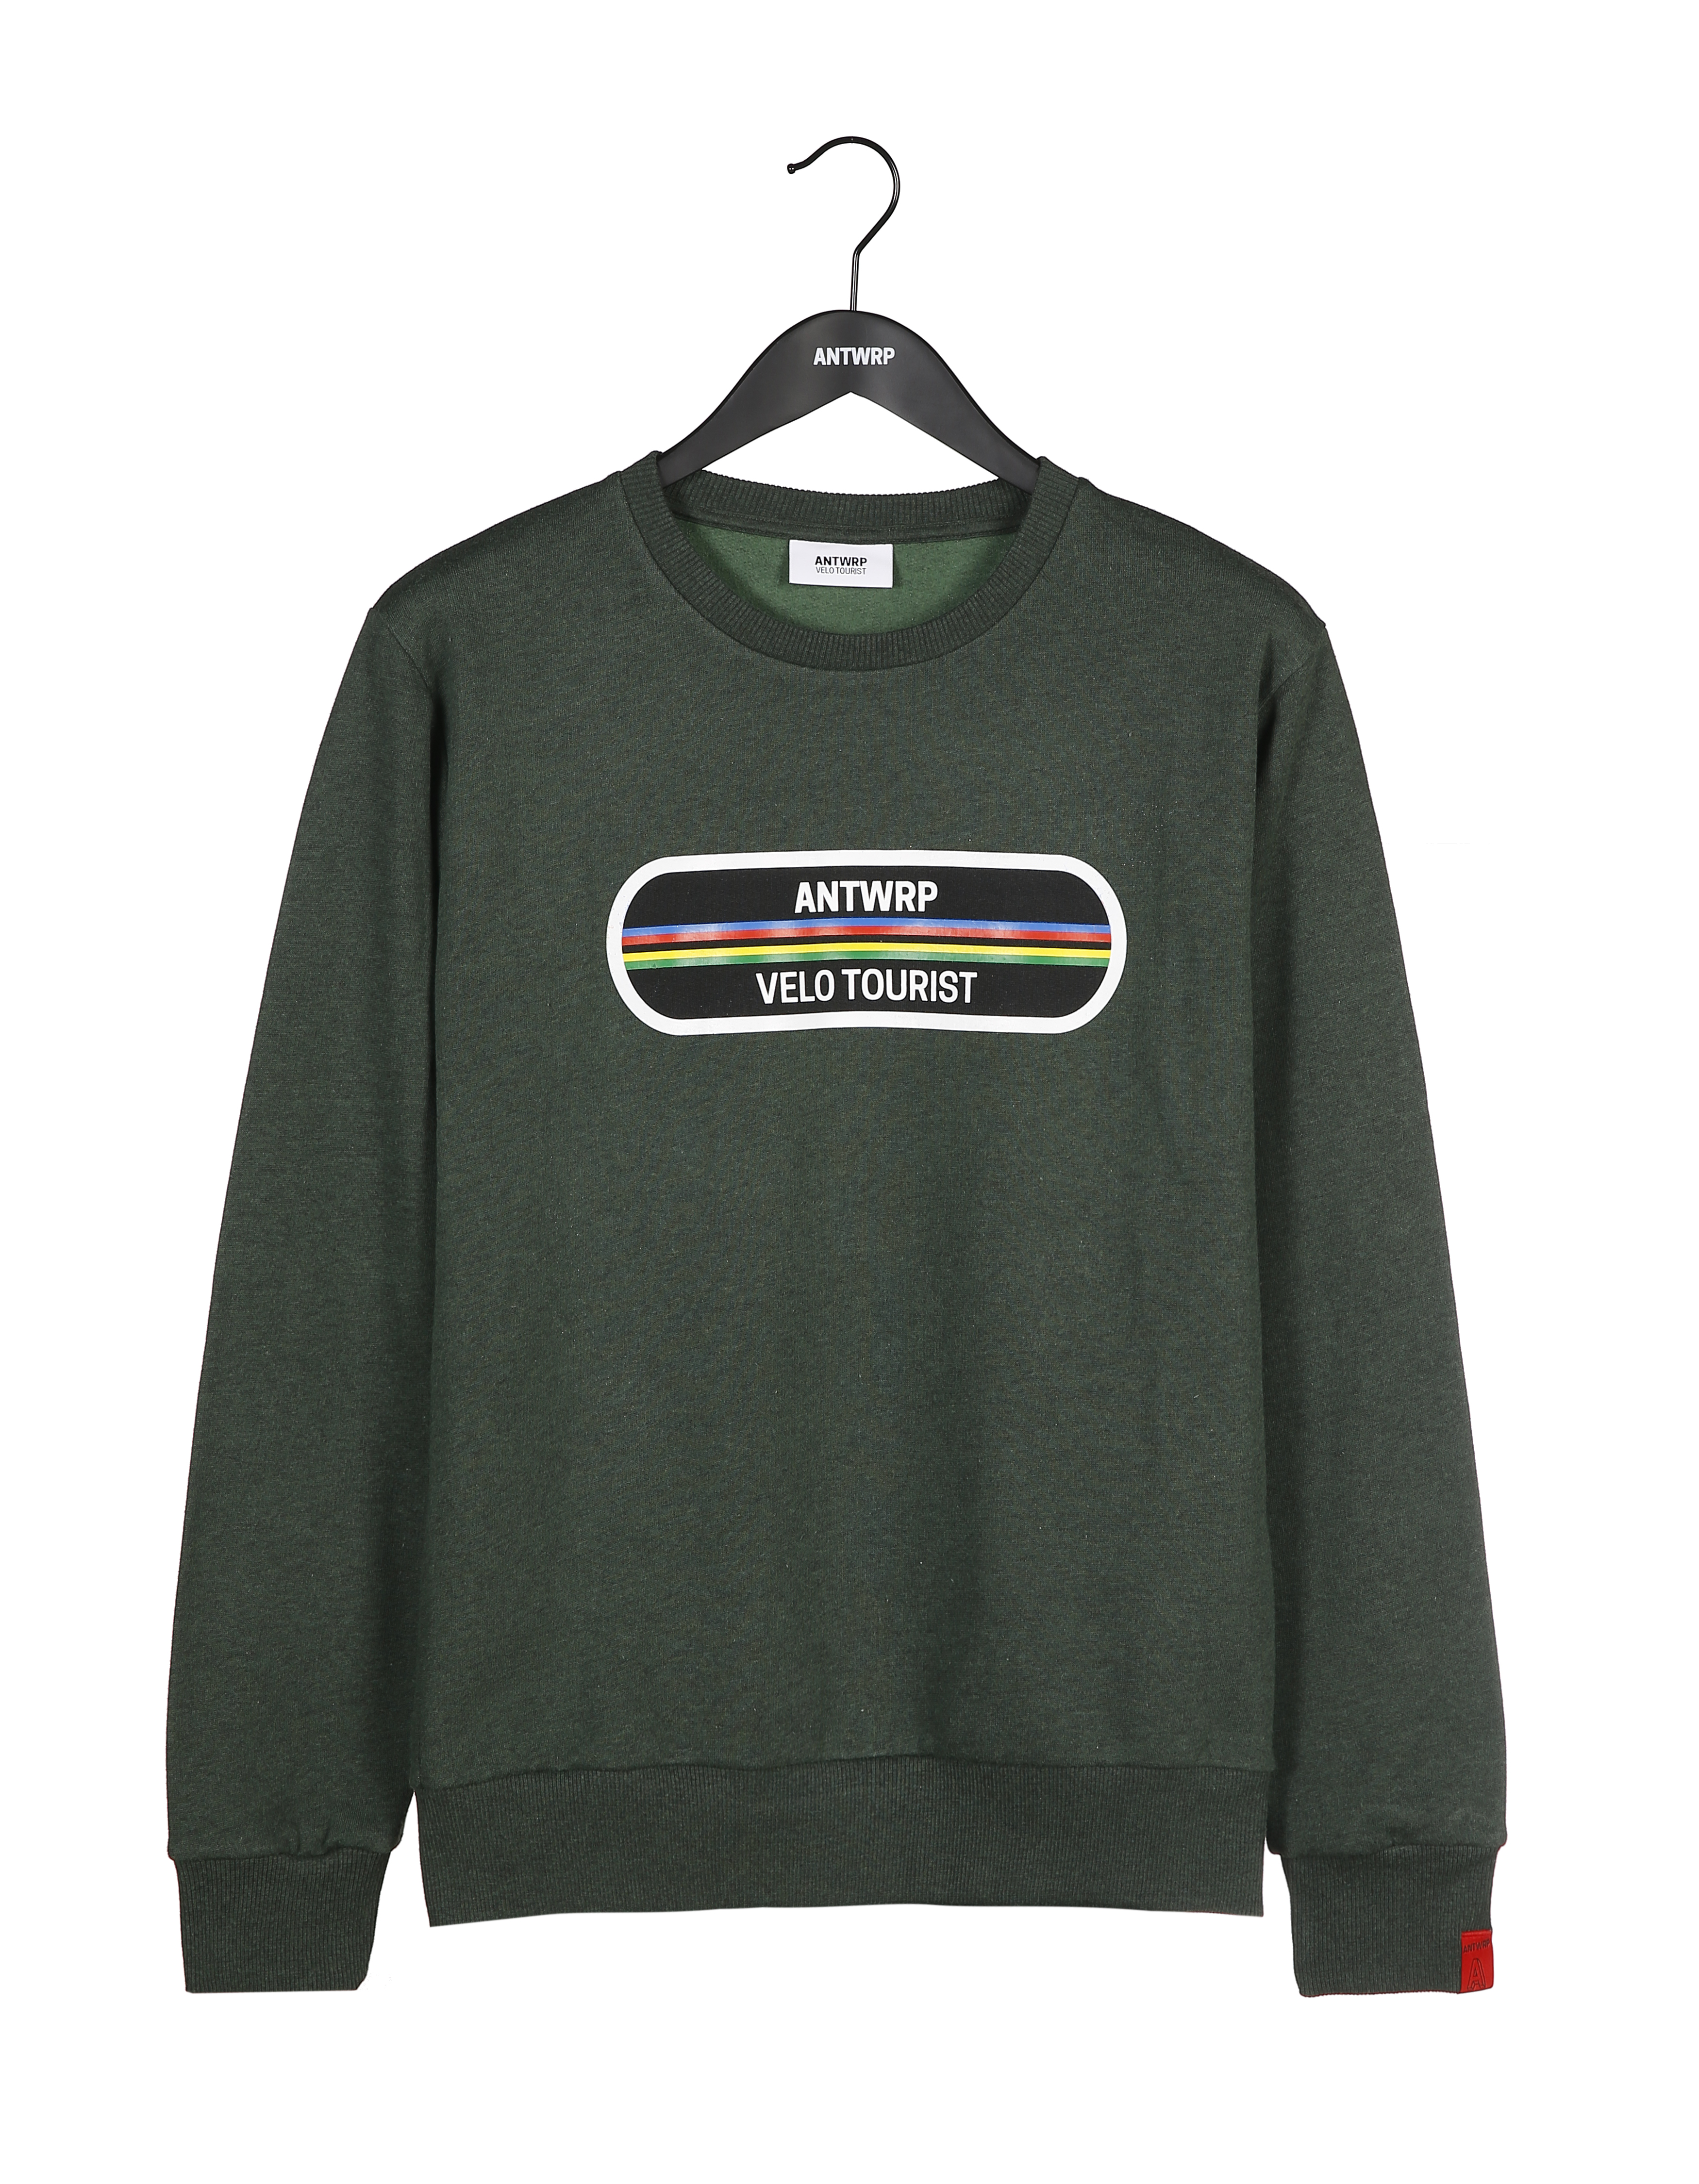 Beschuldiging Manhattan bloemblad Green velo tourist sweater Antwrp - Crapule de Luxe